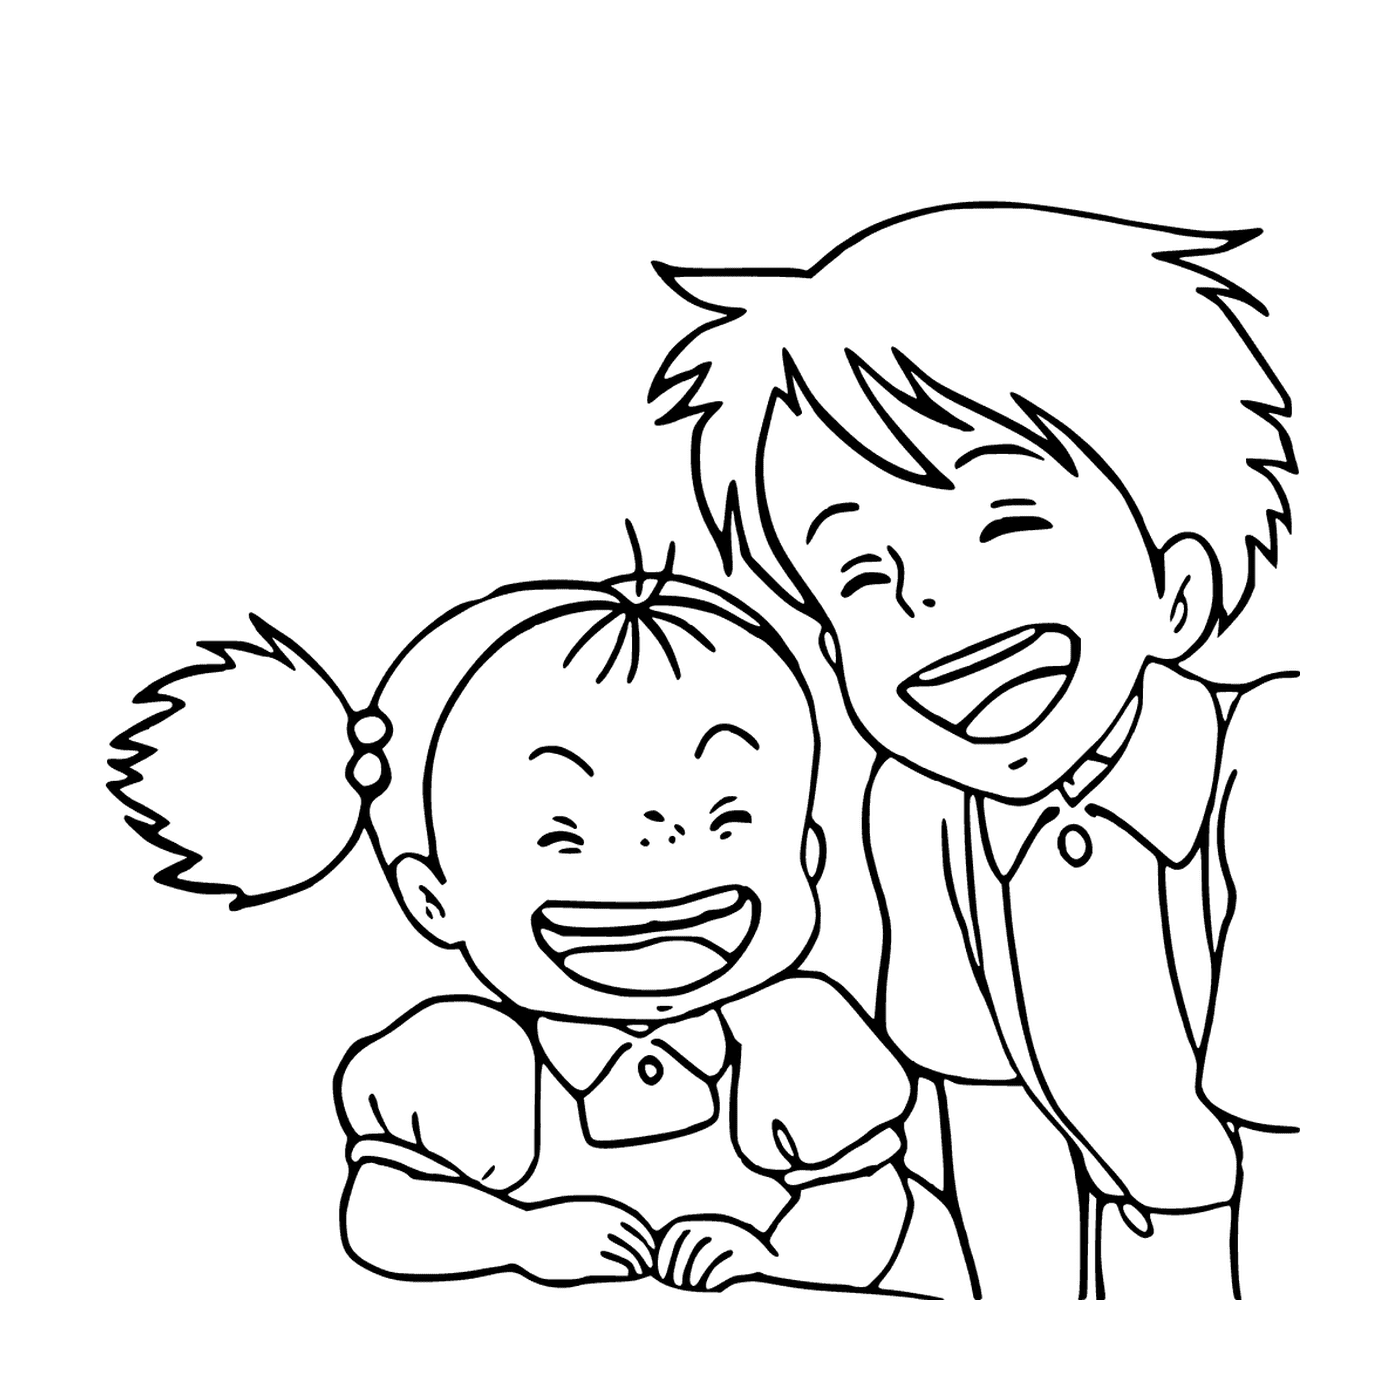  Junge und kleines Mädchen lachen zusammen 